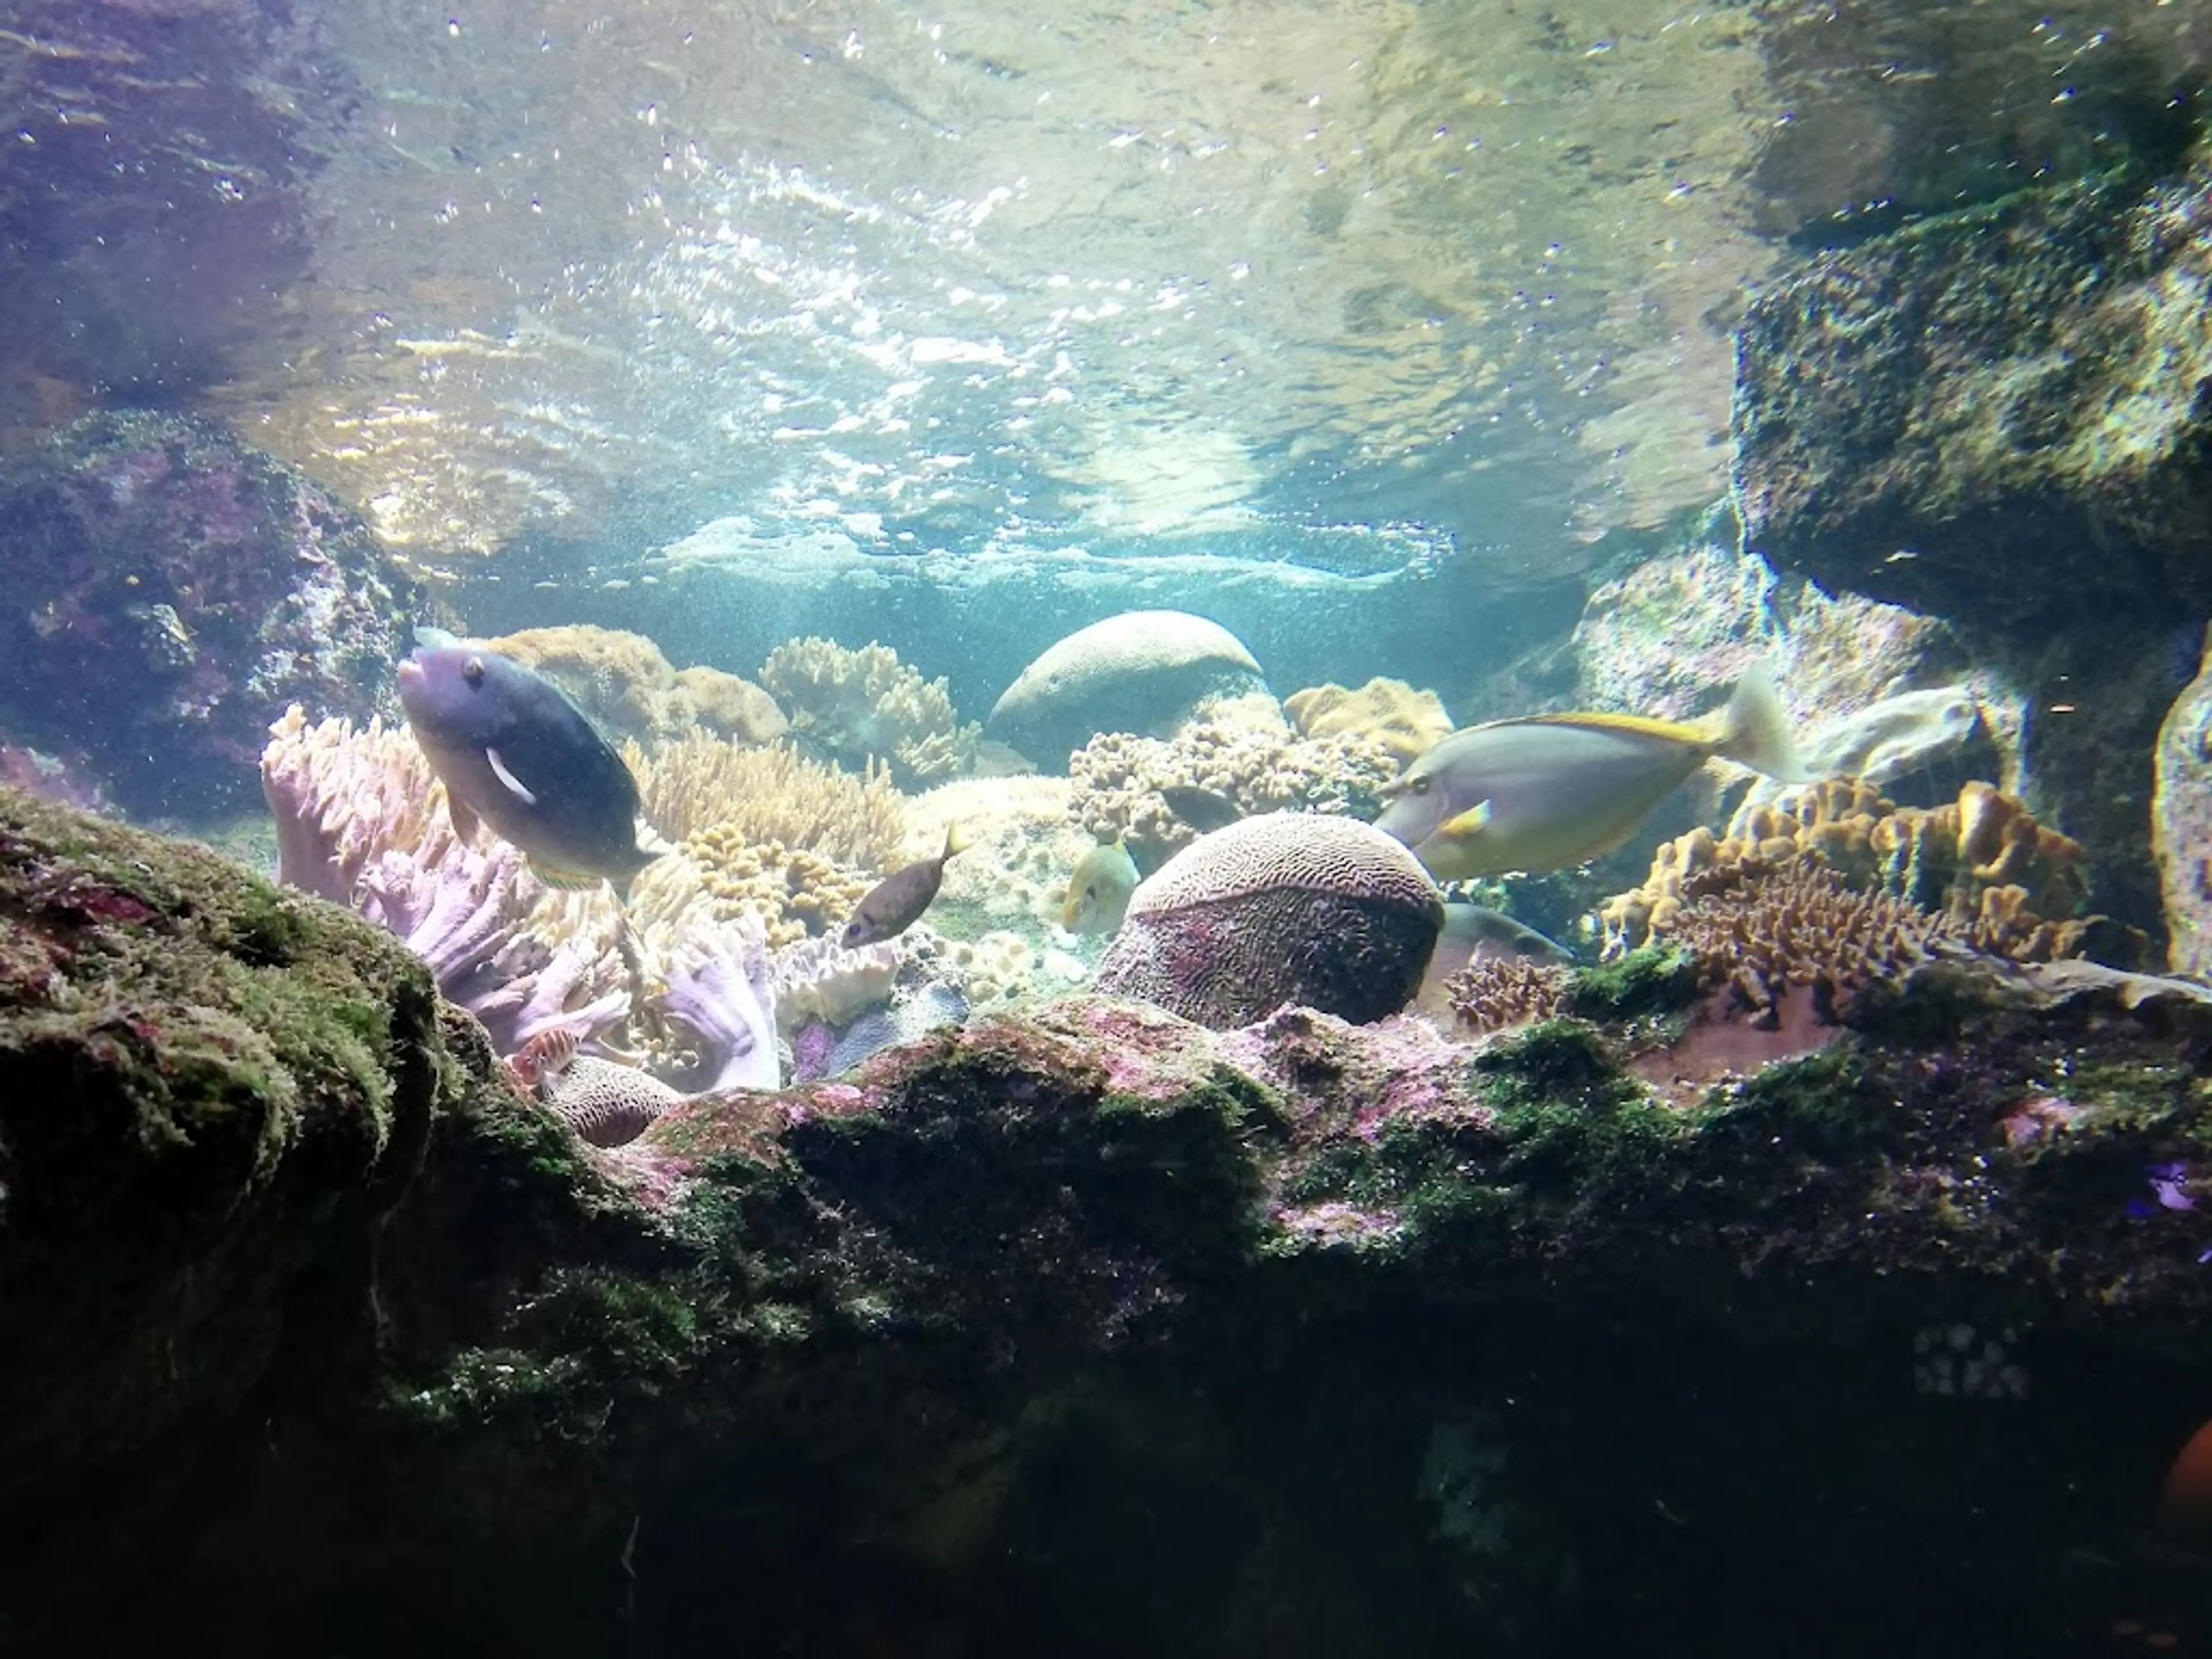 Aquarium of Reunion Island